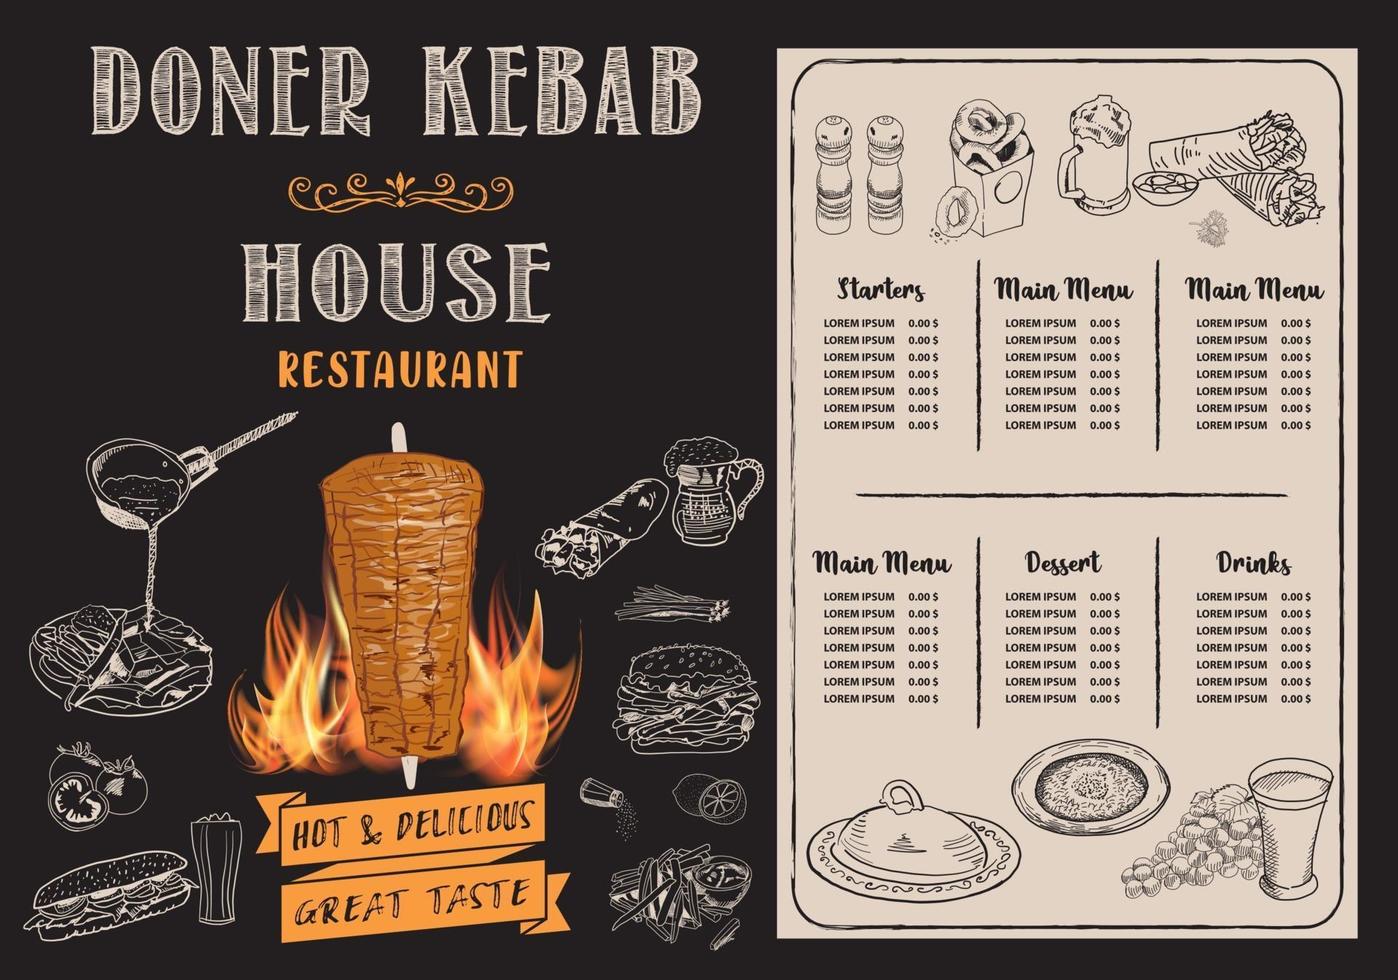 Dönerkochen und Zutaten für Kebab. vektor